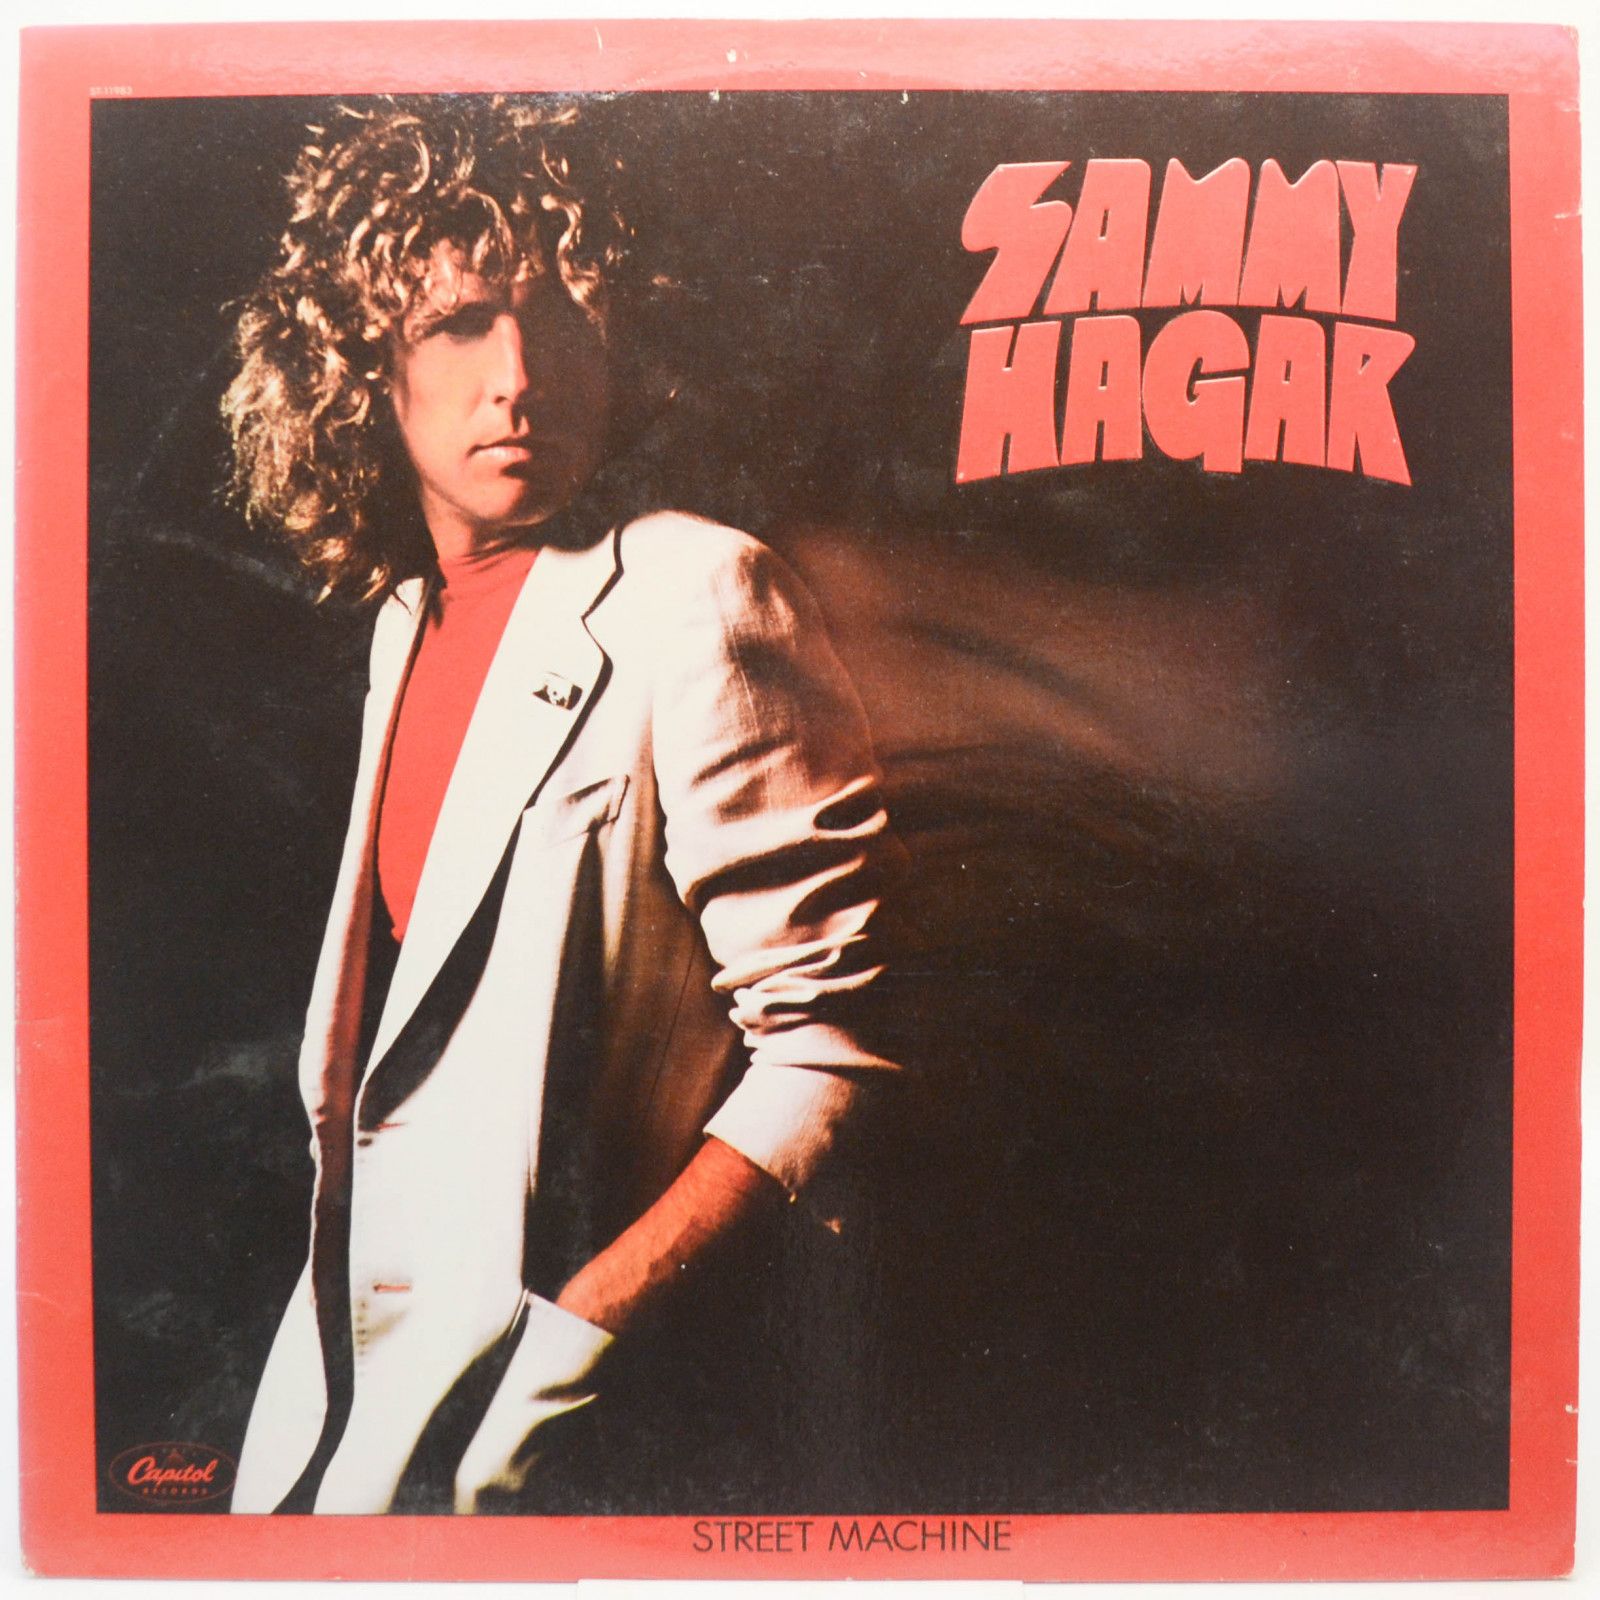 Sammy Hagar — Street Machine (1-st, USA), 1979